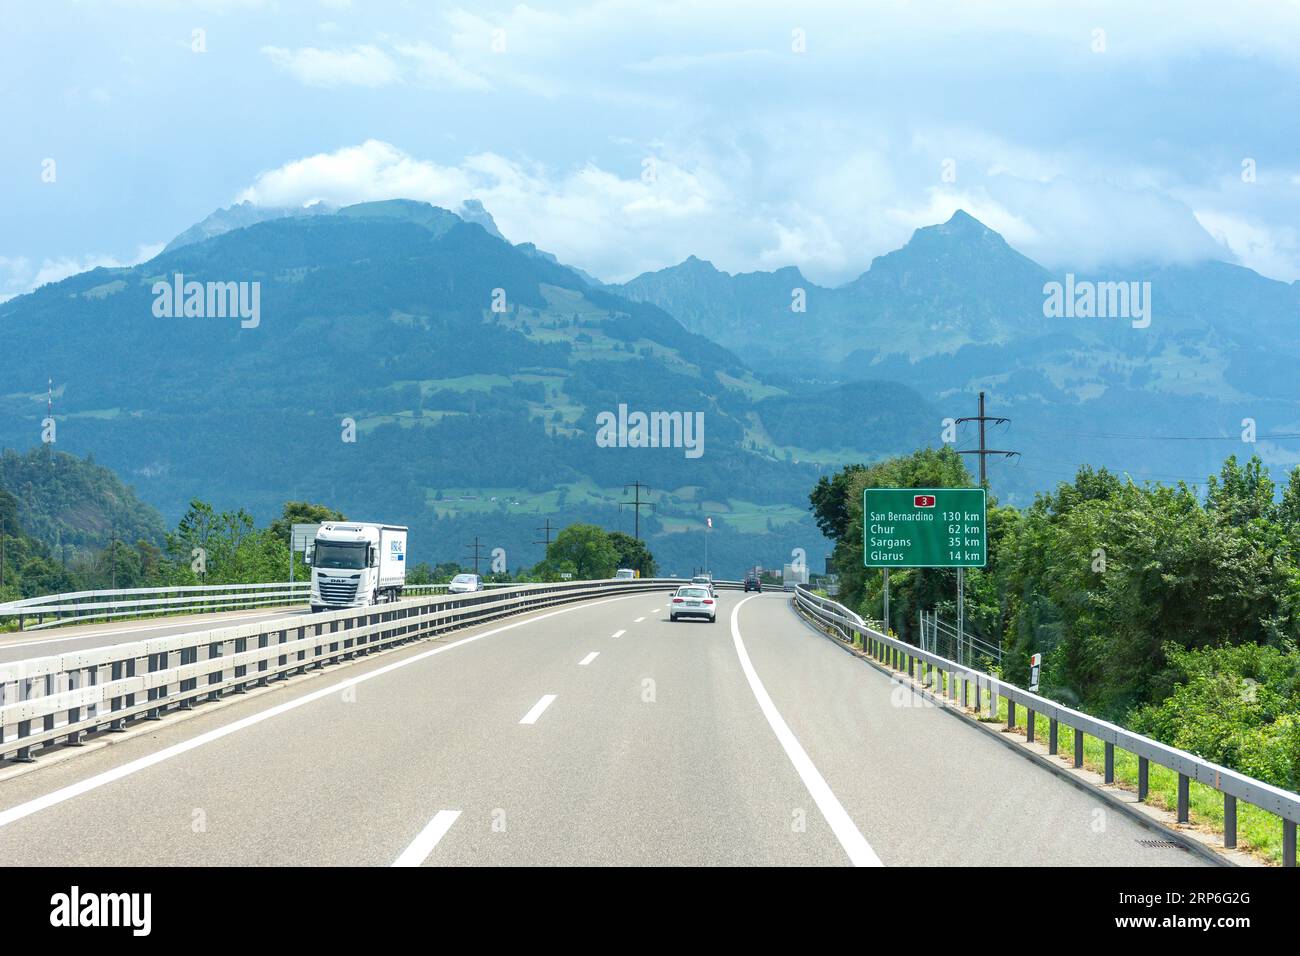 Autoroute 3 près de Glaris montrant les montagnes de Mürtschenstock, Canton de Glaris, Suisse Banque D'Images